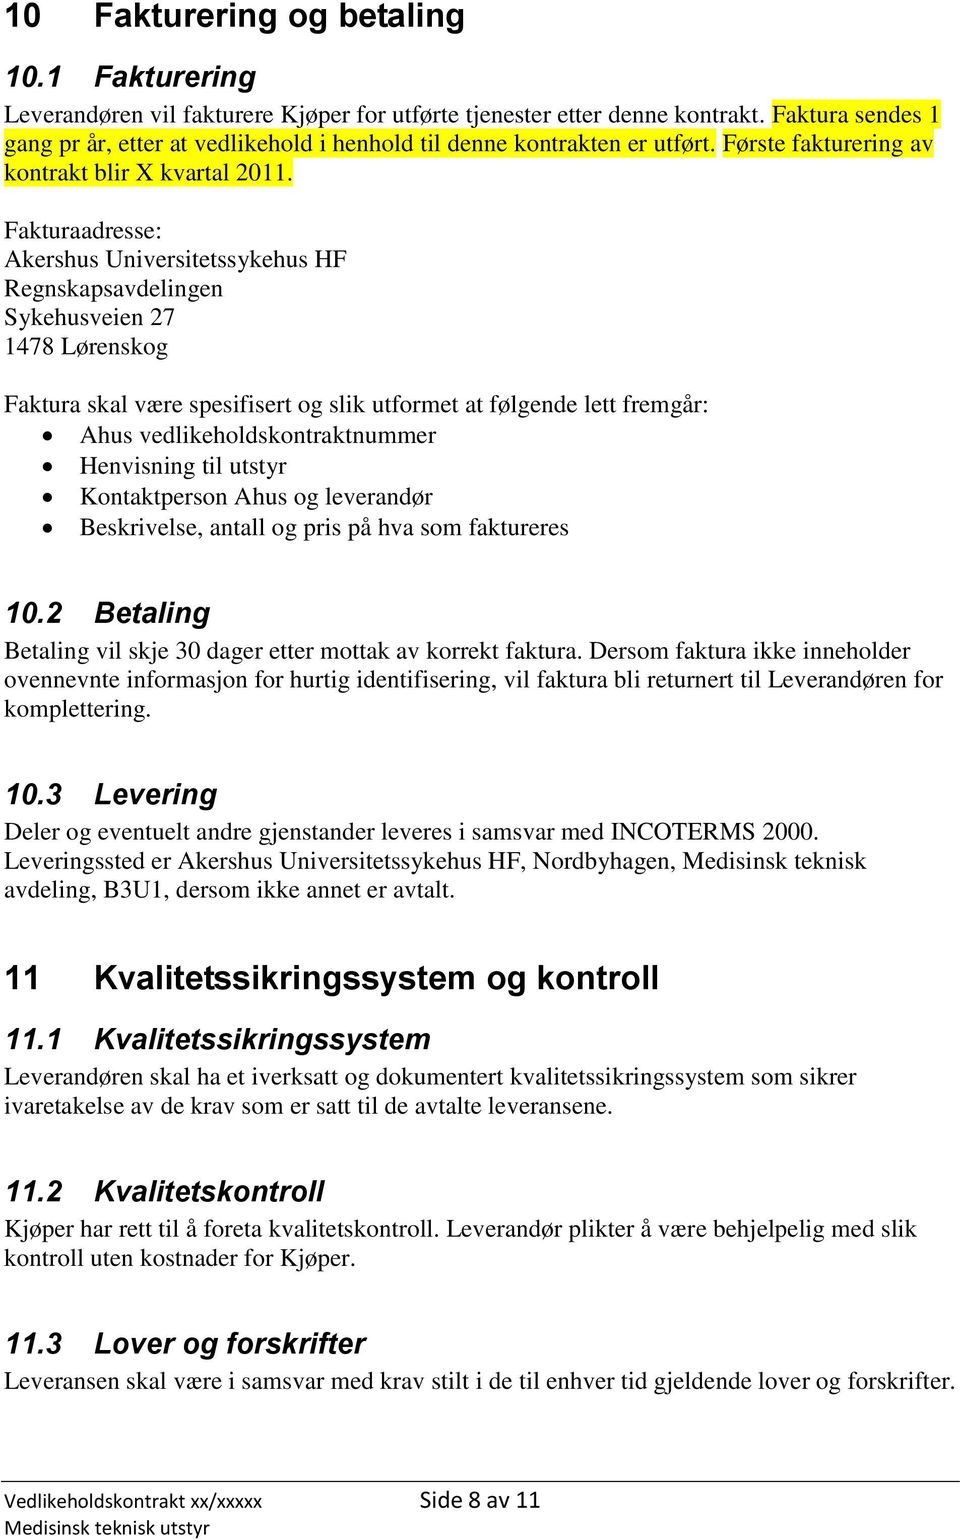 Fakturaadresse: Akershus Universitetssykehus HF Regnskapsavdelingen Sykehusveien 27 1478 Lørenskog Faktura skal være spesifisert og slik utformet at følgende lett fremgår: Ahus